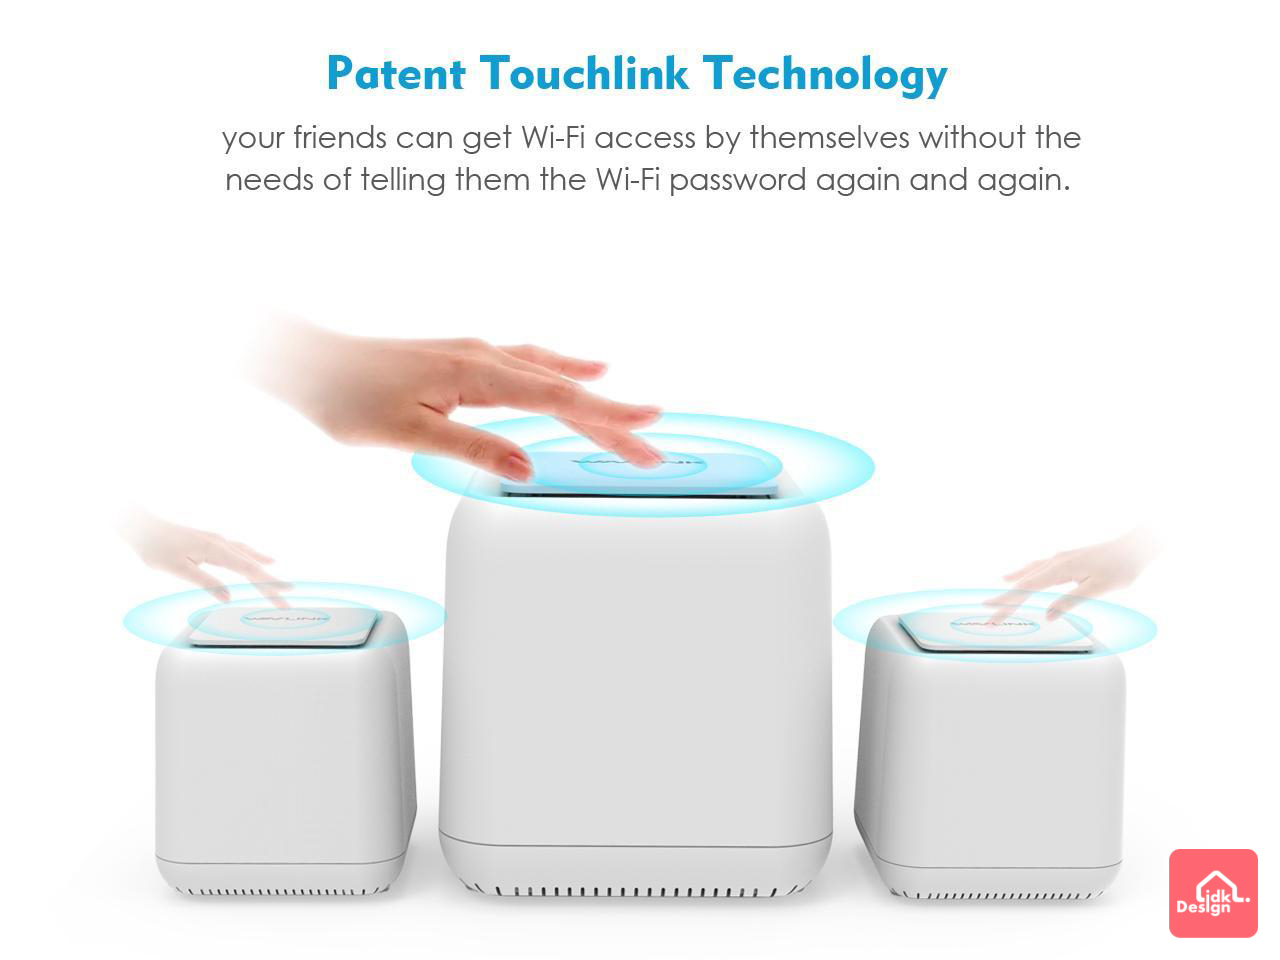 WAVLINK 獨家研發TouchLink專利技術「一拍即連」